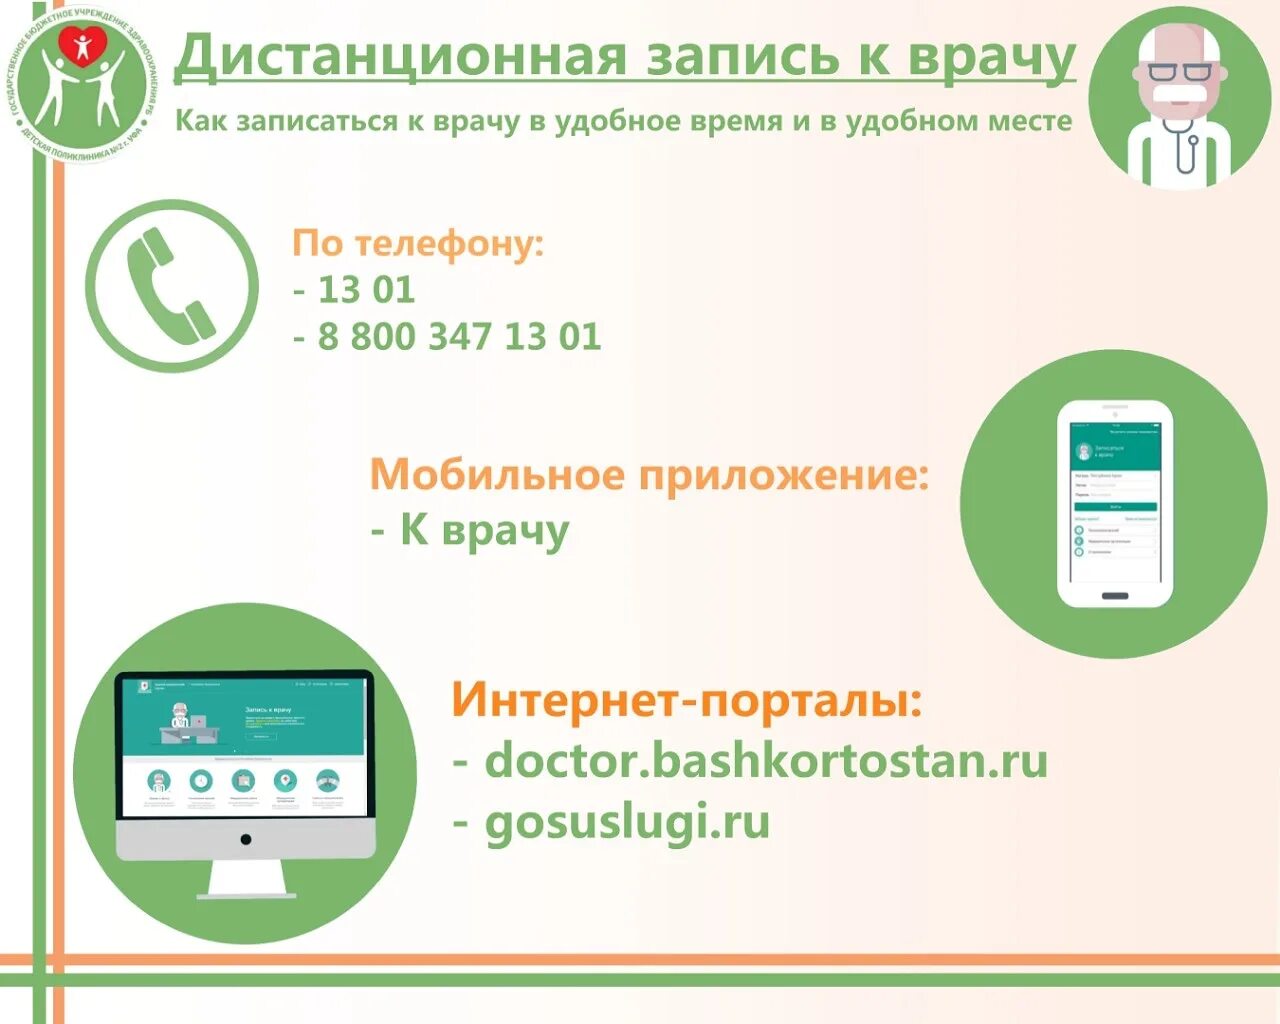 Единый номер записи к врачу Башкортостан. Записаться к врачу. Единая запись к врачу. Телефон для записи на прием к врачу.